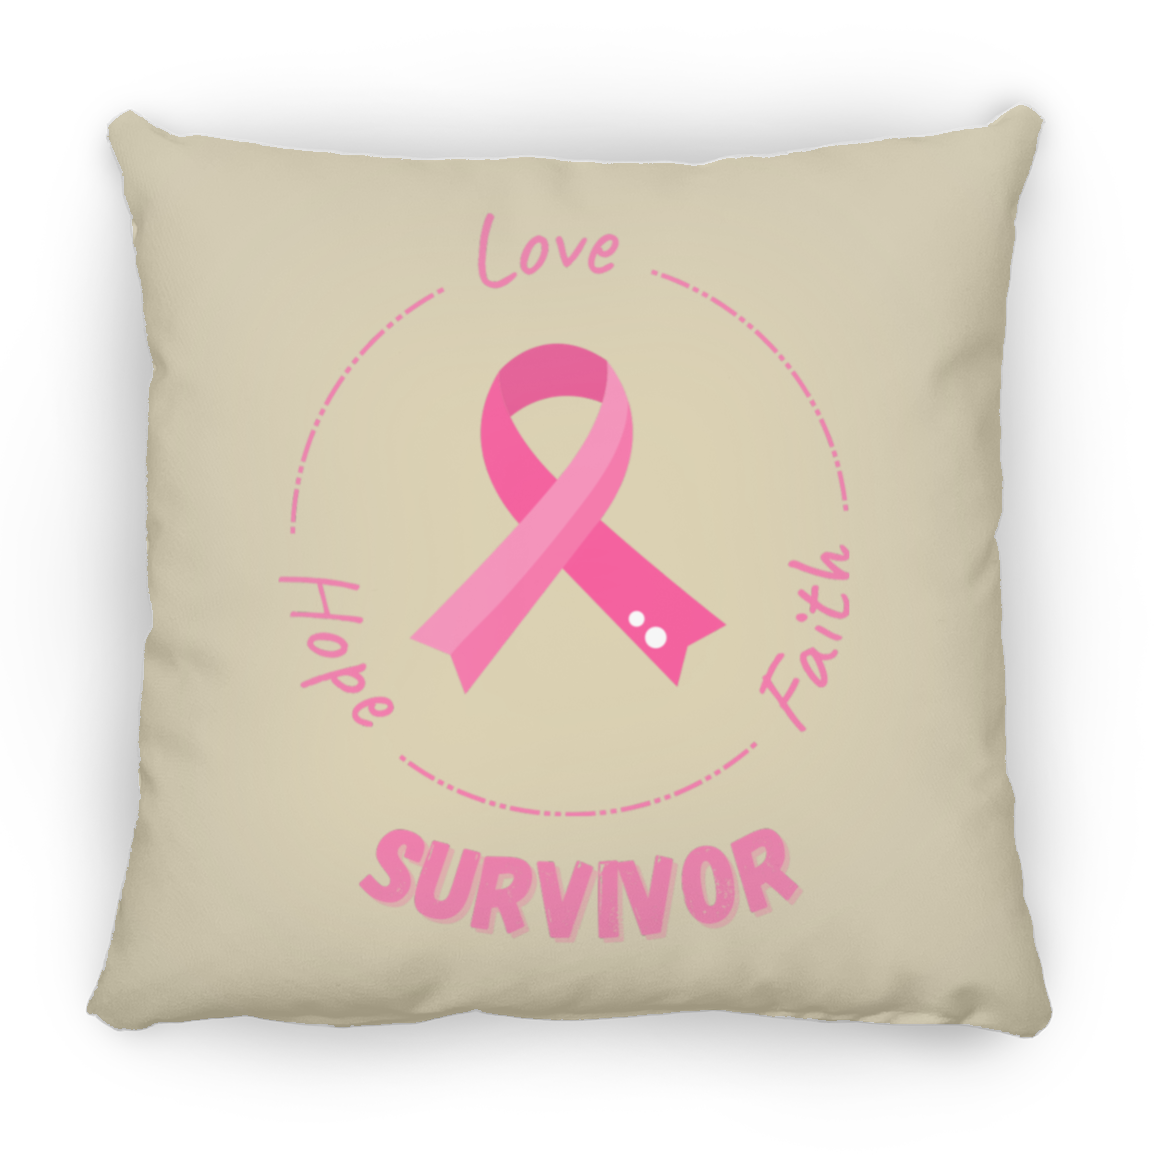 Survivor Square Pillow